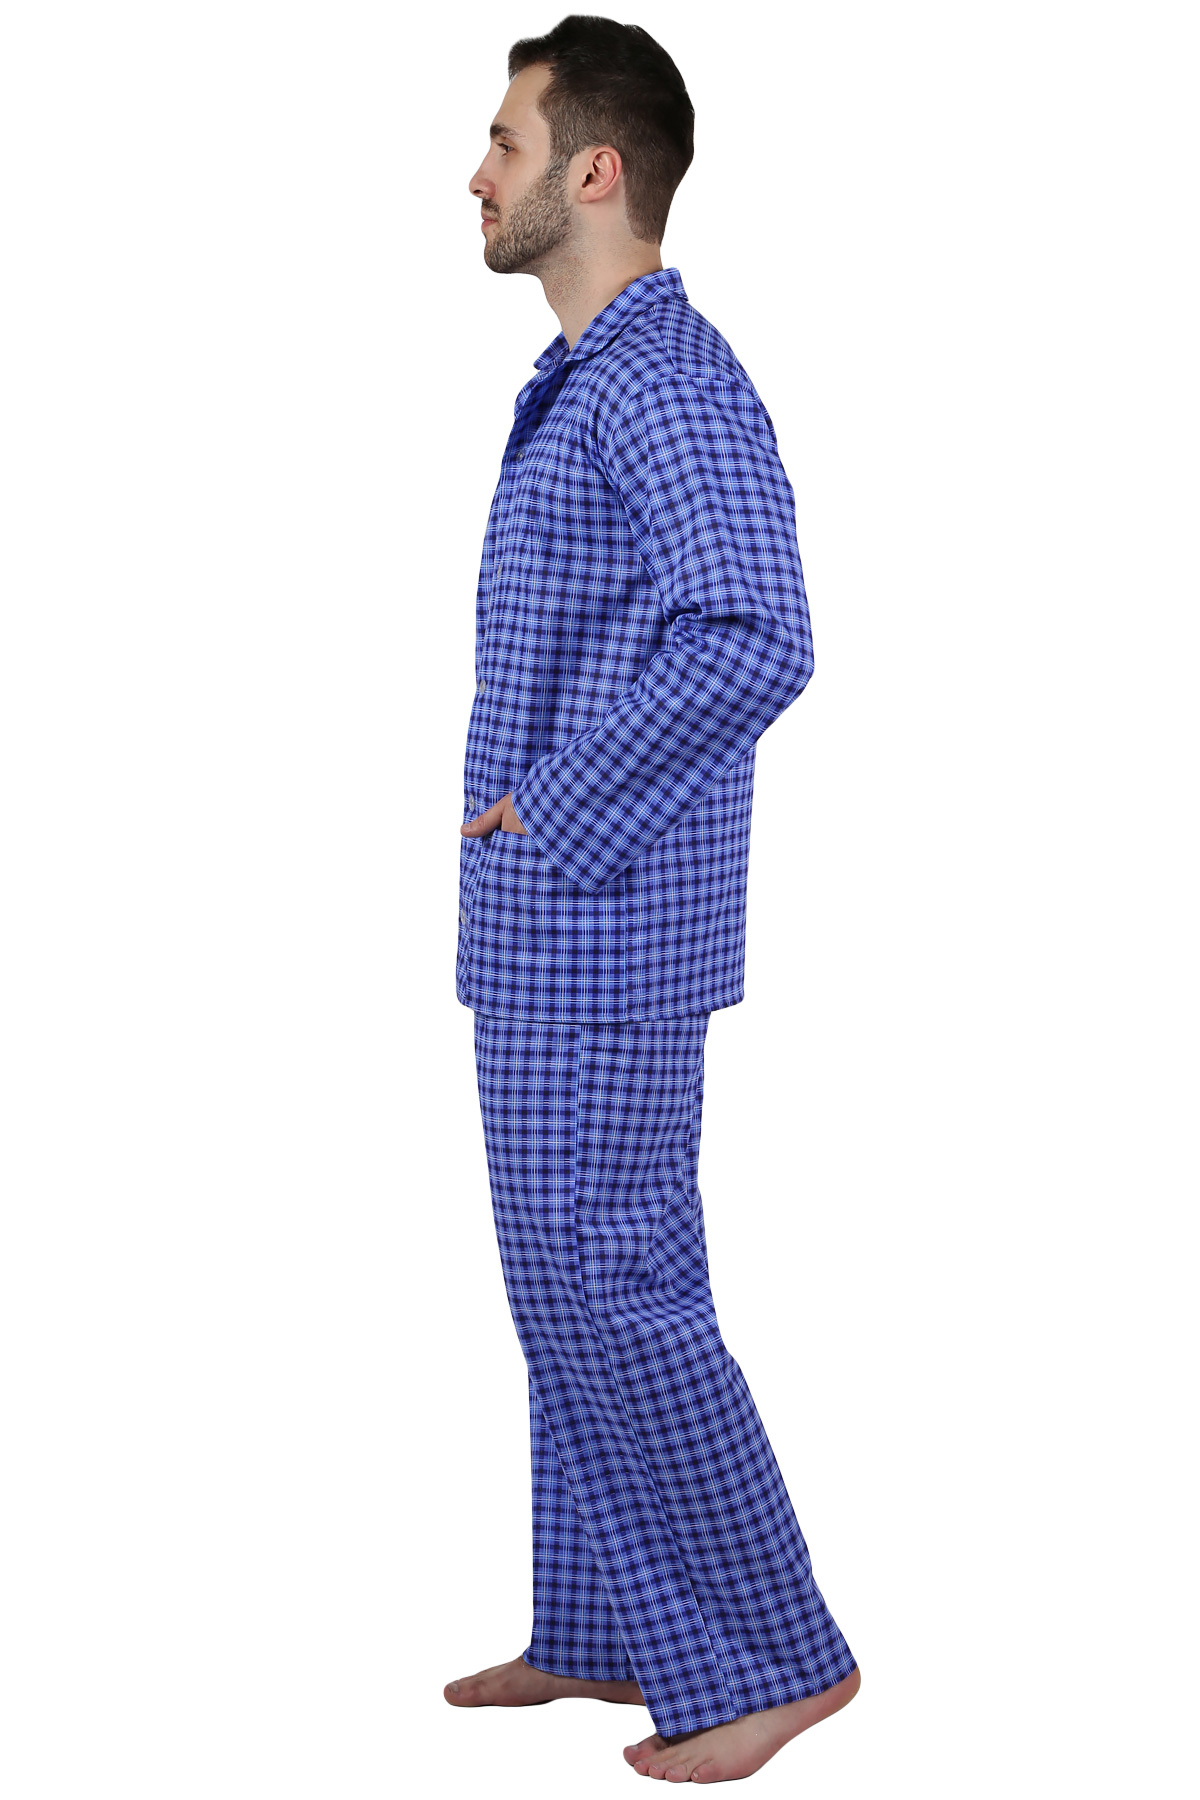 Муж. пижама арт. 22-0210 В ассортименте р. 50 Оптима трикотаж, размер 50 - фото 2